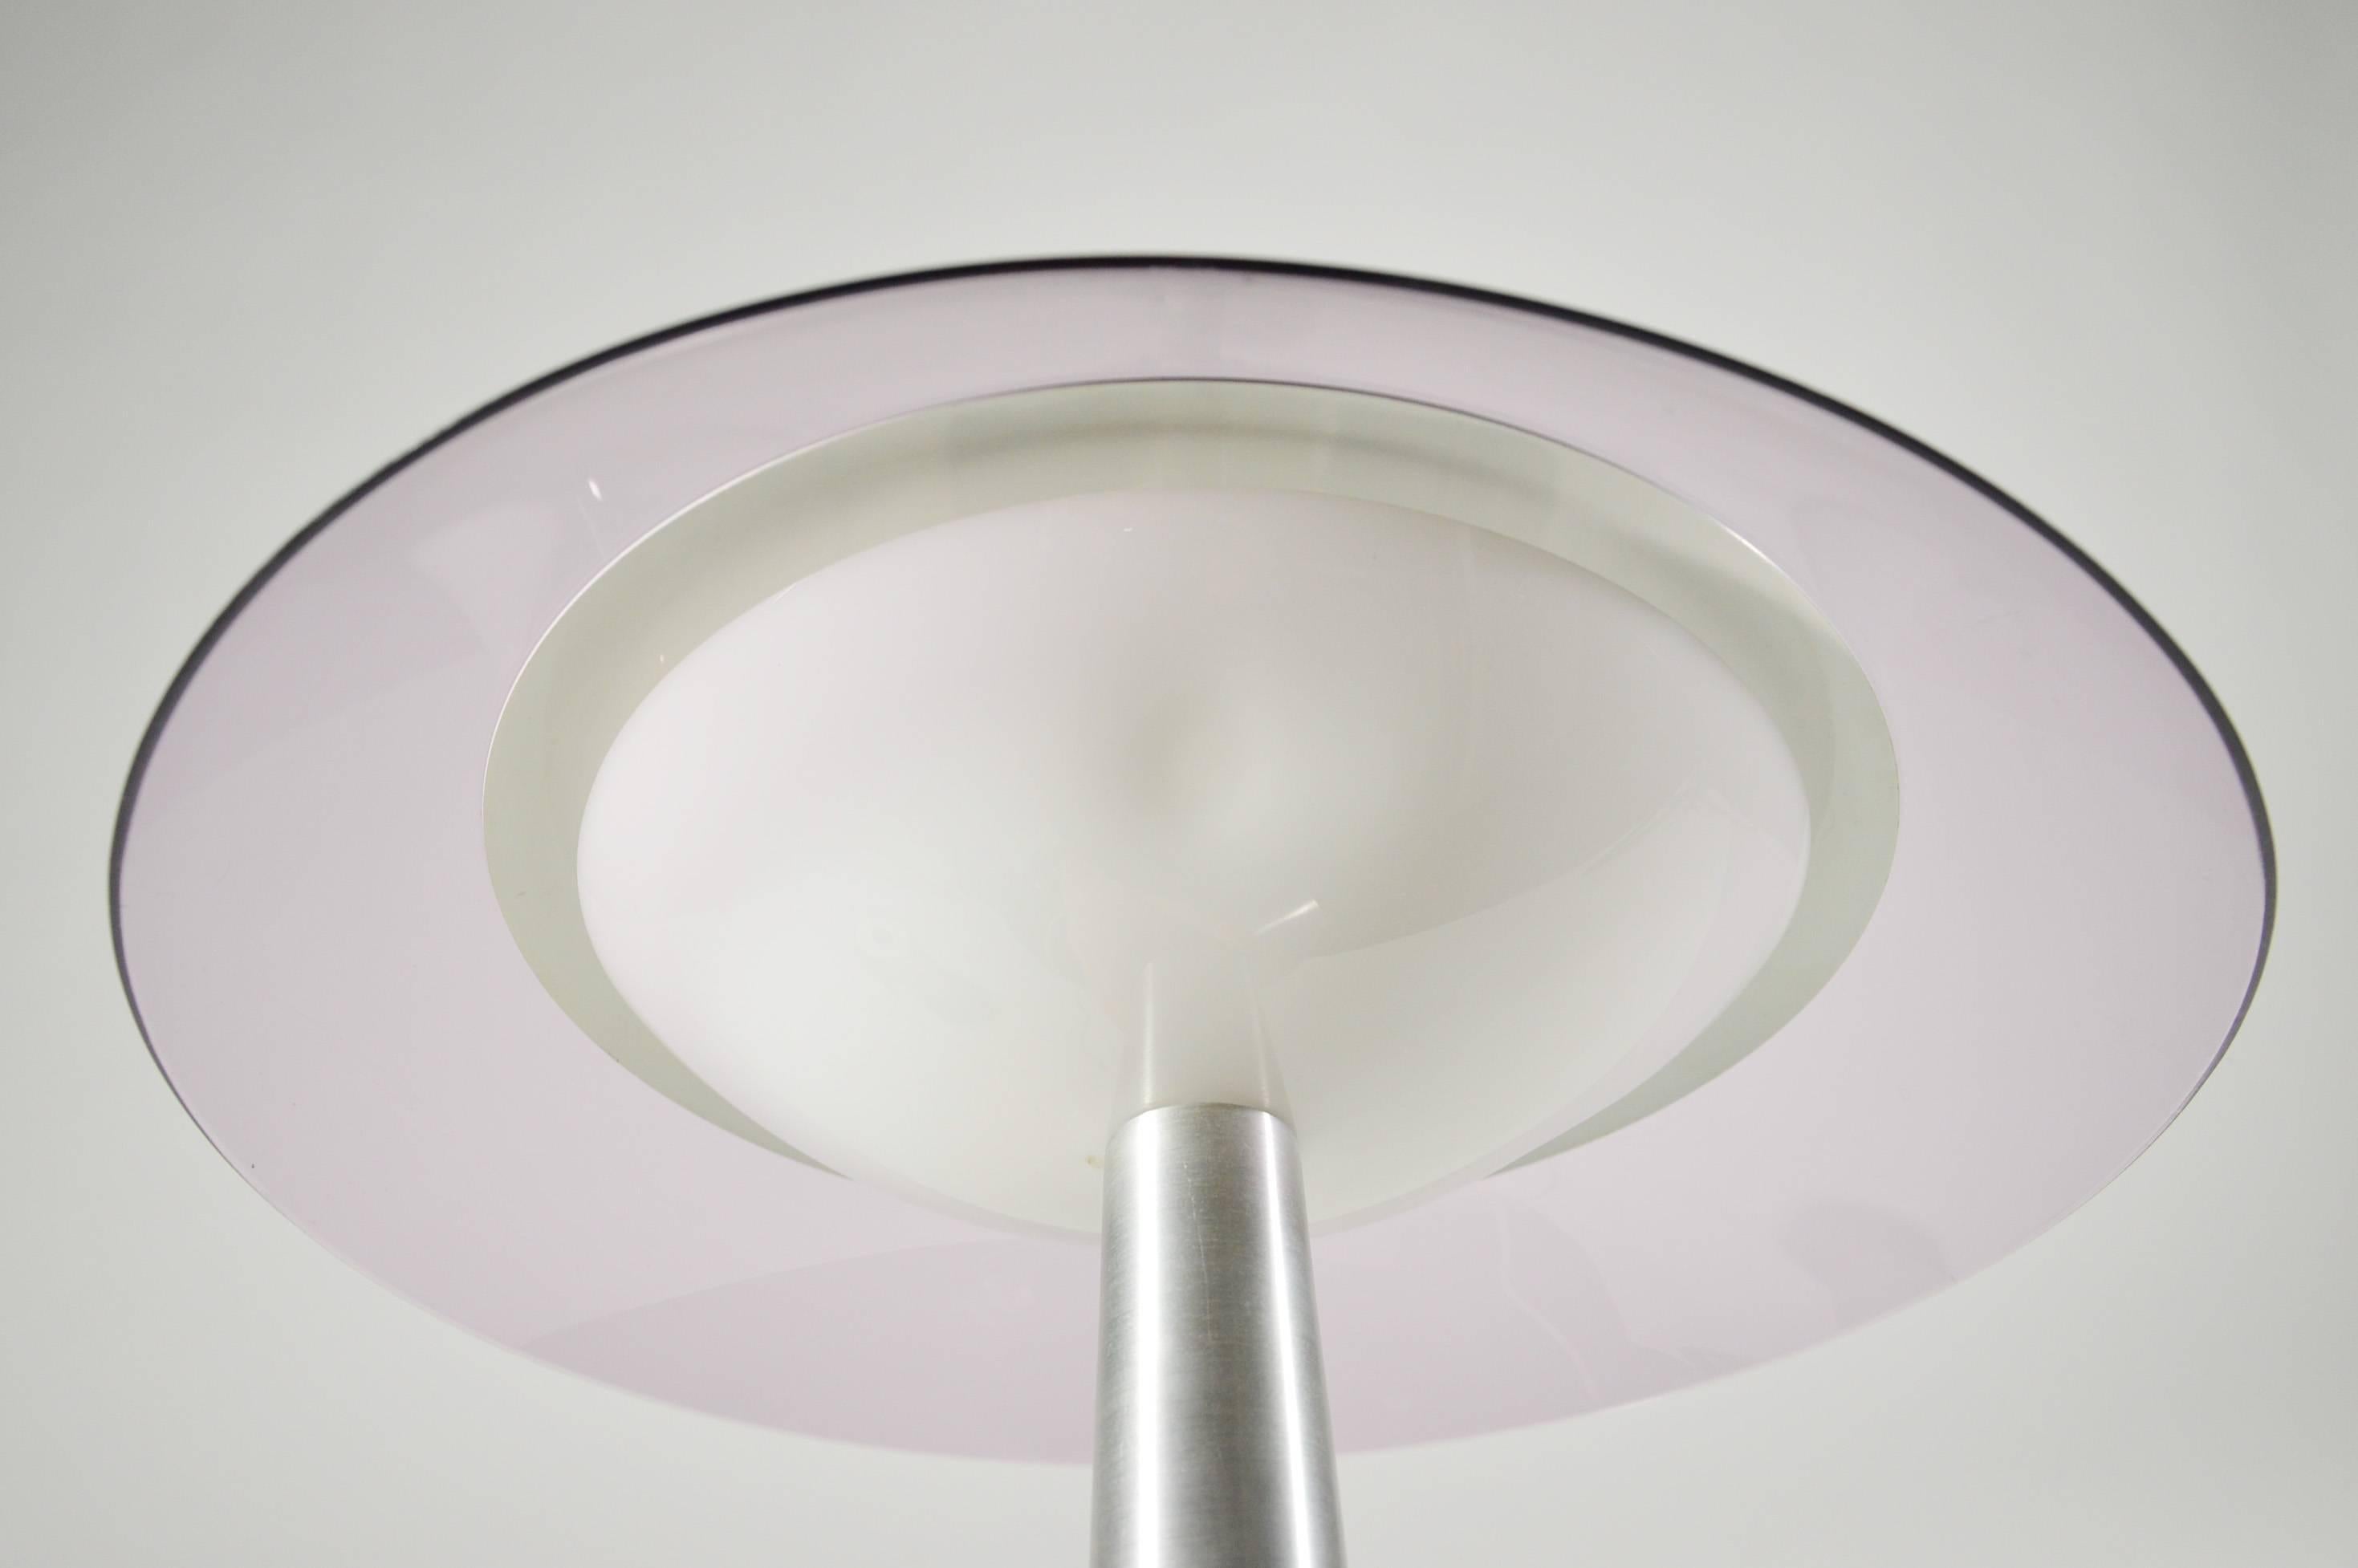 Stilux Milano Italian Table Lamp in Lucite and Aluminium, circa 1960 For Sale 4